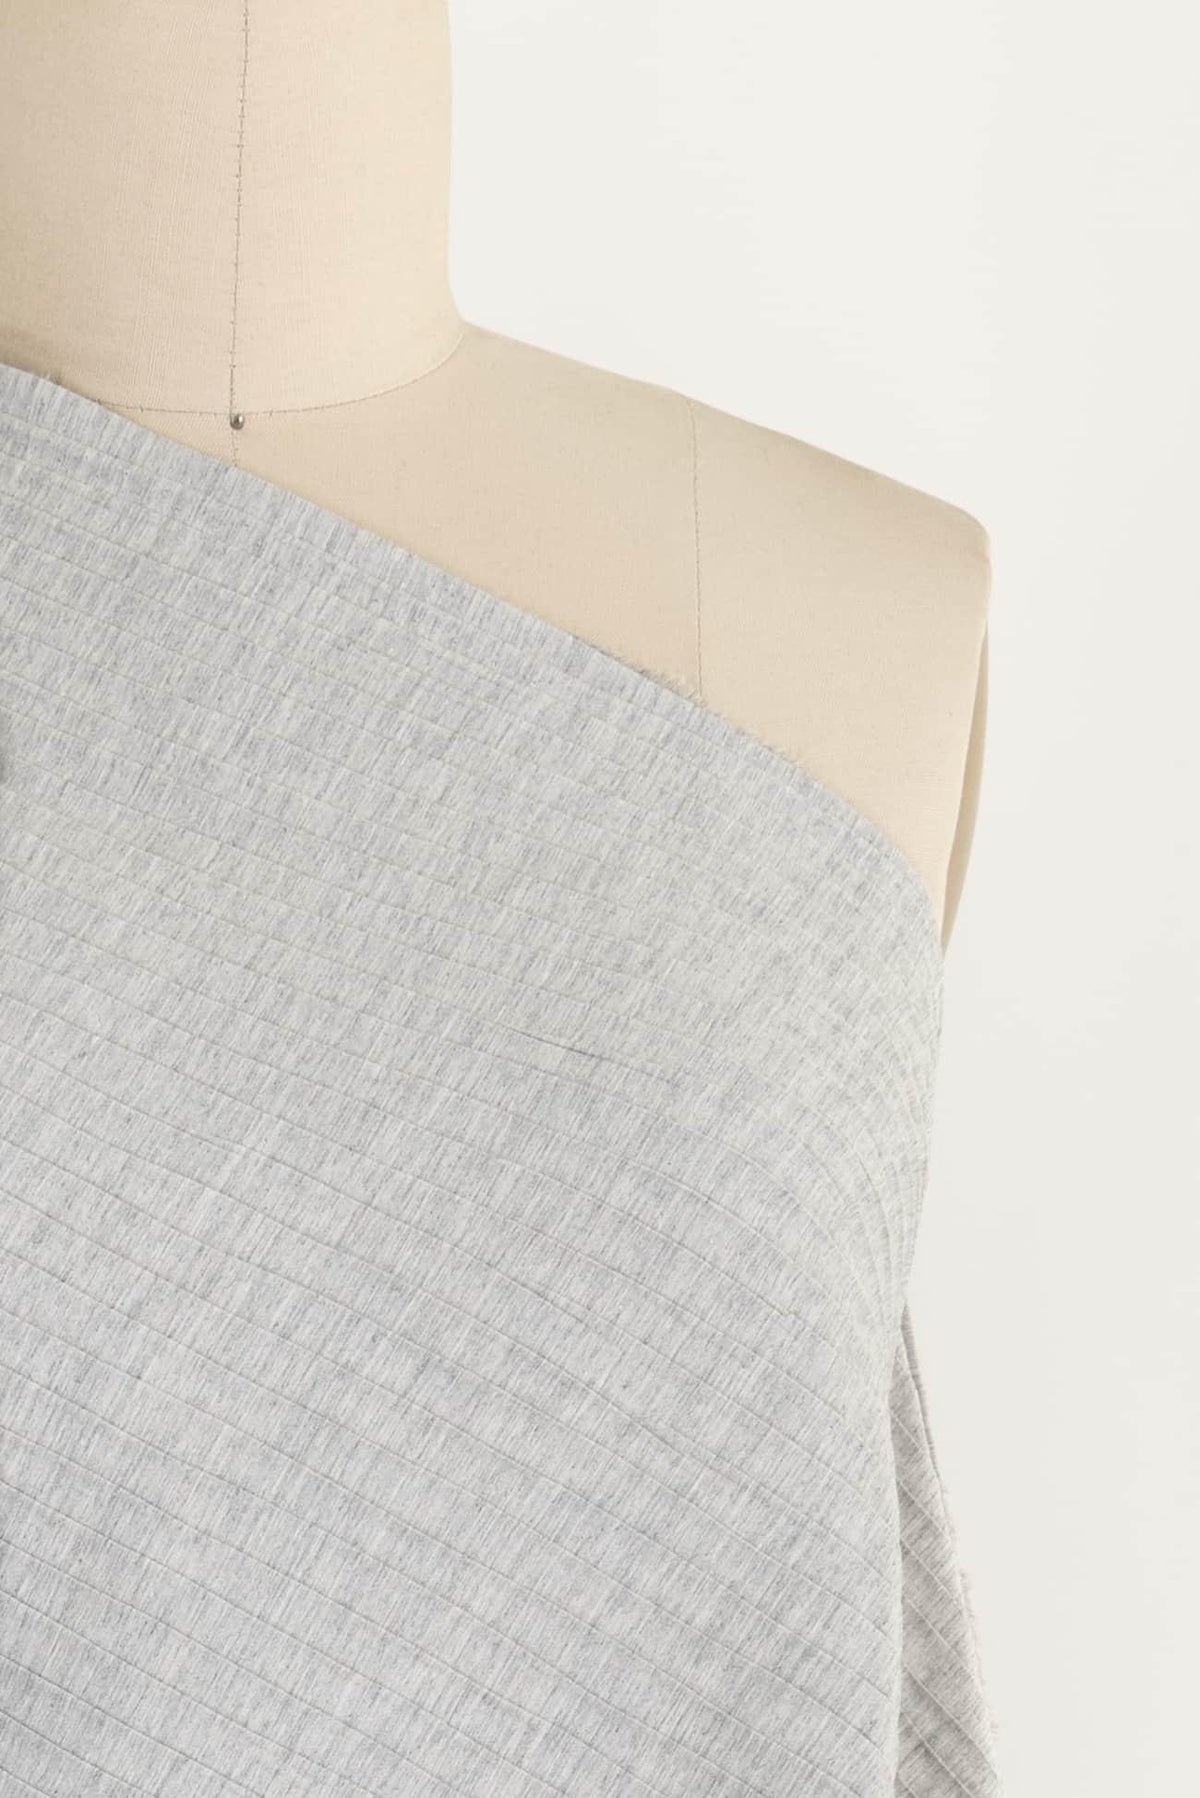 Gray Tucks Pleated Stretch Woven - Marcy Tilton Fabrics